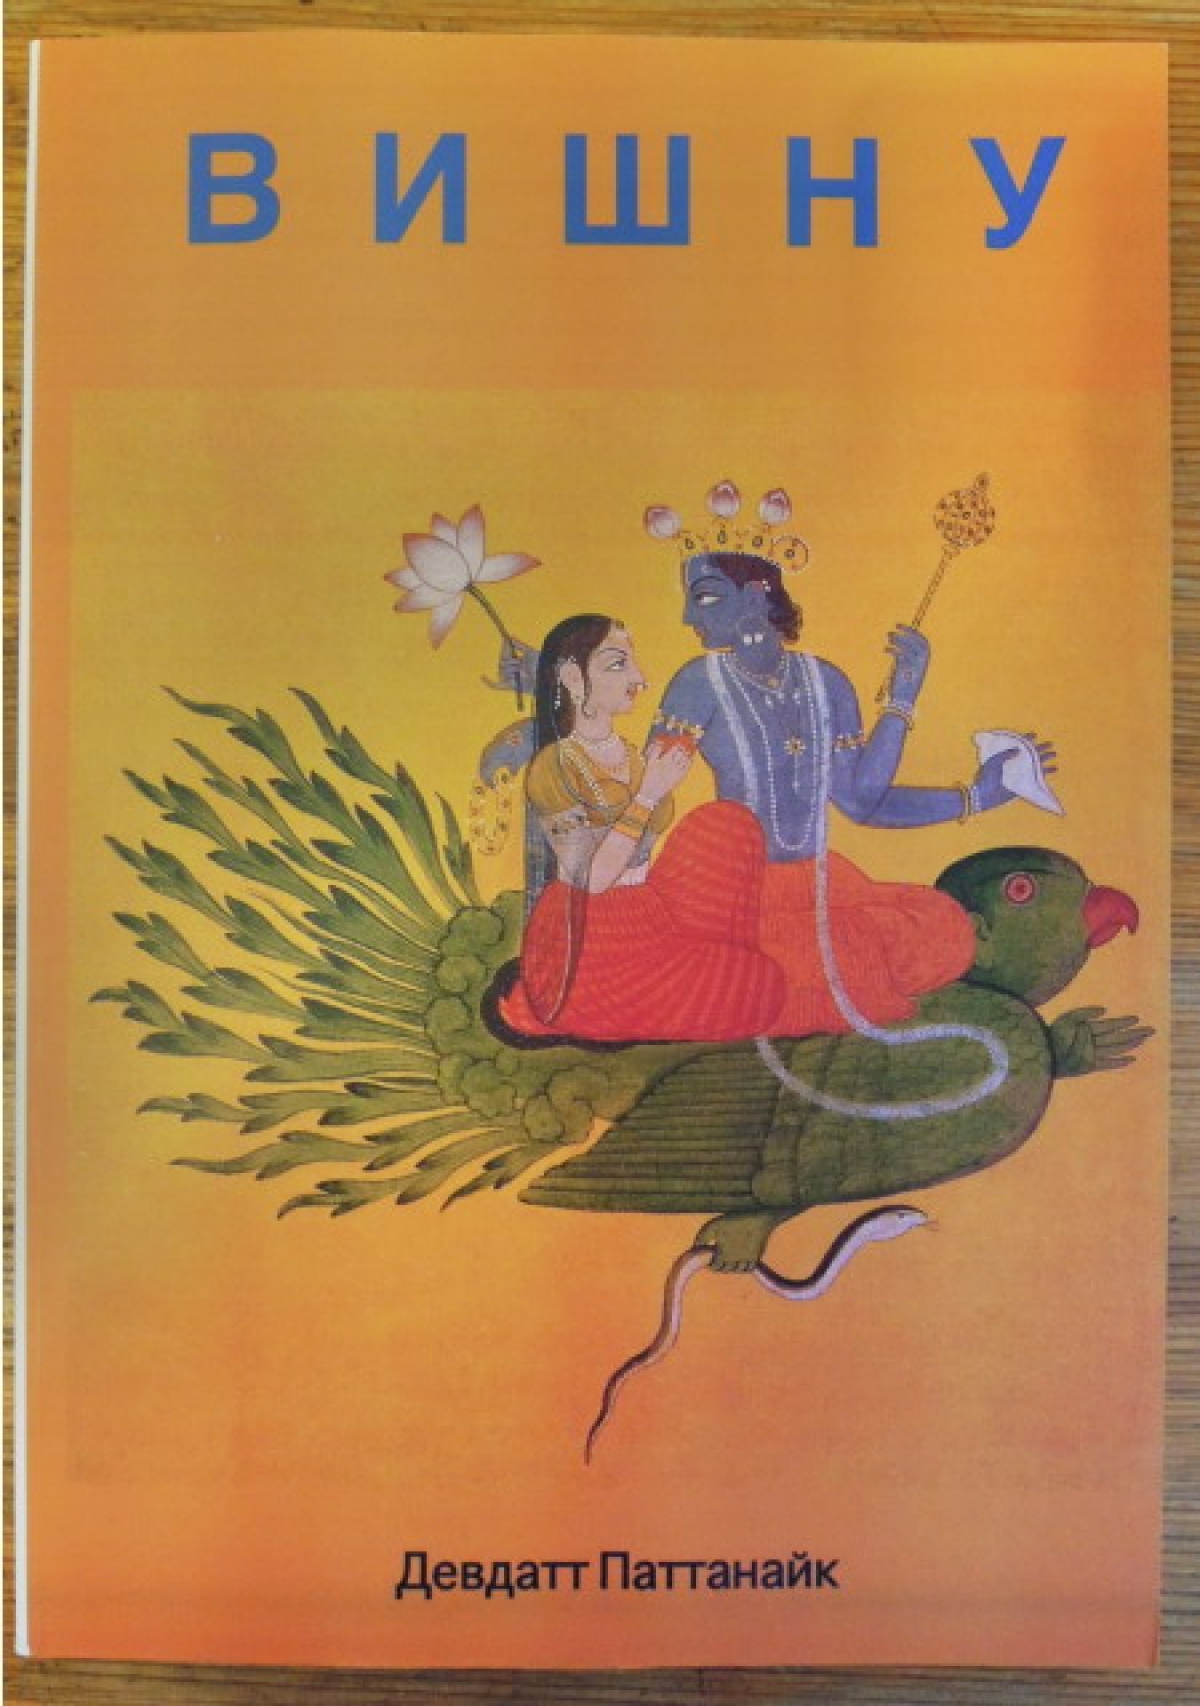 Серия книг издательства "Сувитра", посвященных главным божествам индийского пантеона